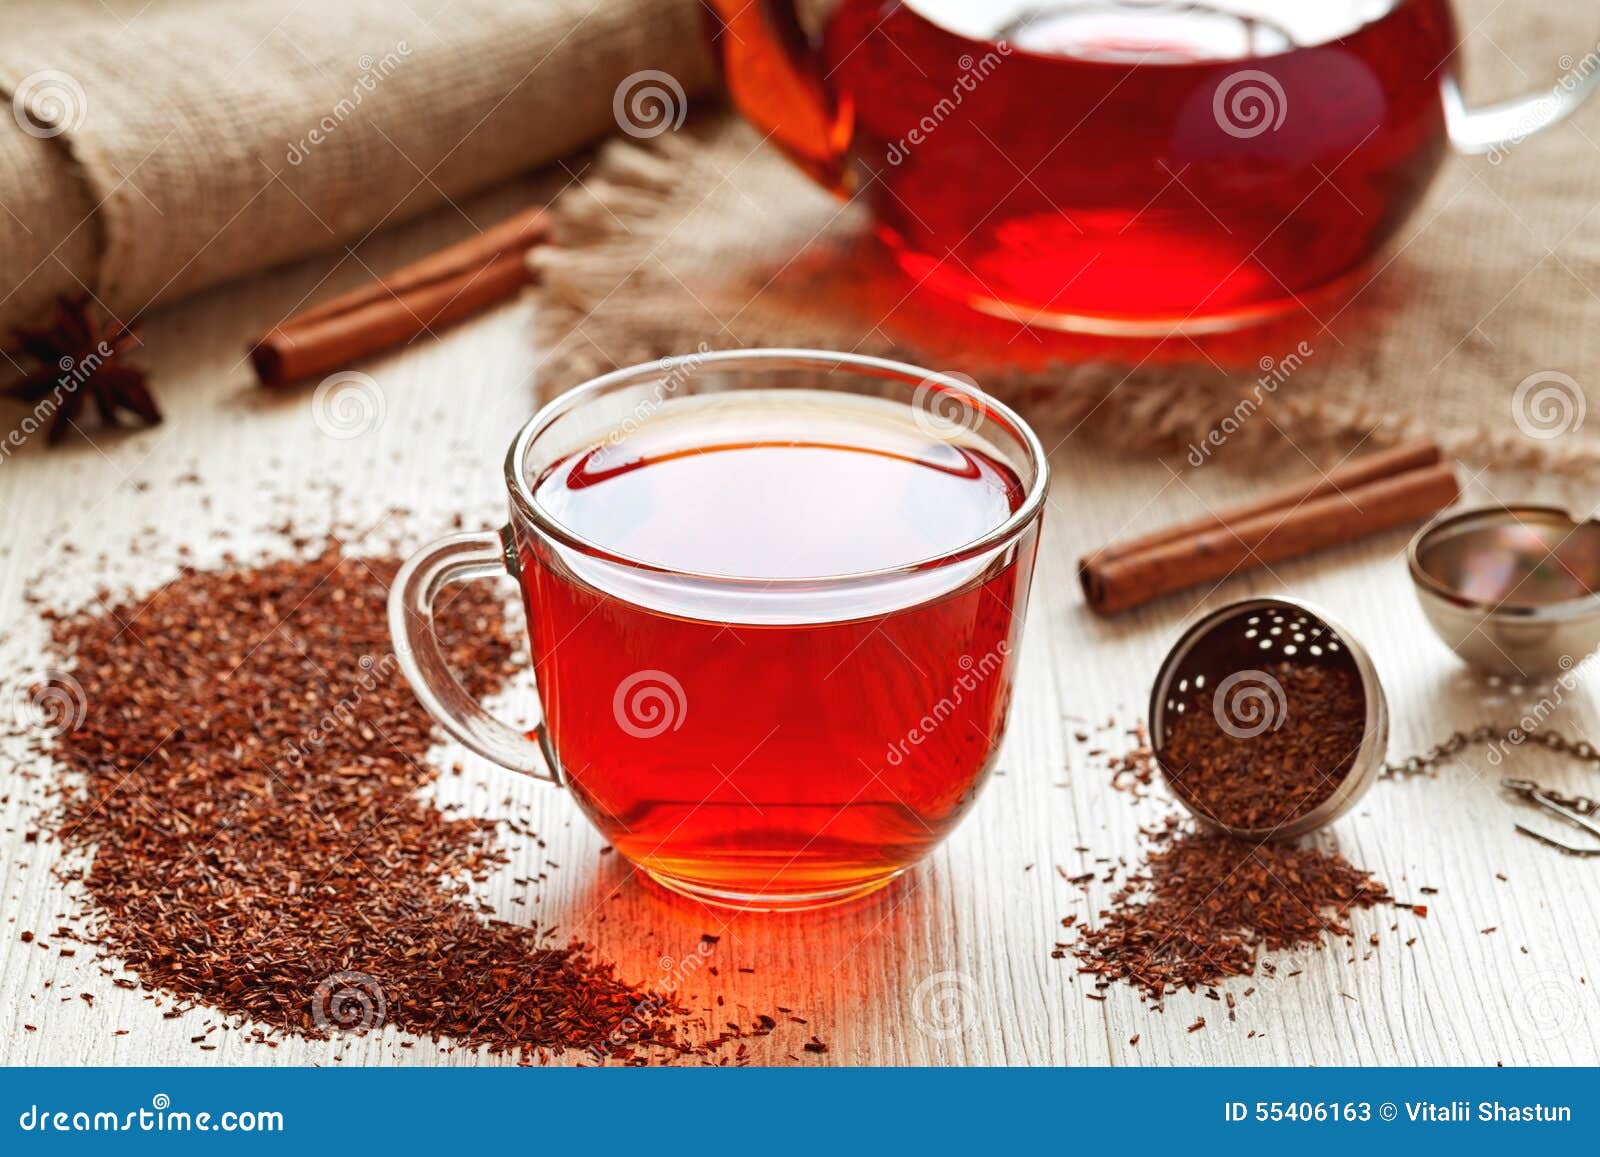 healthy traditional herbal rooibos beverage tea